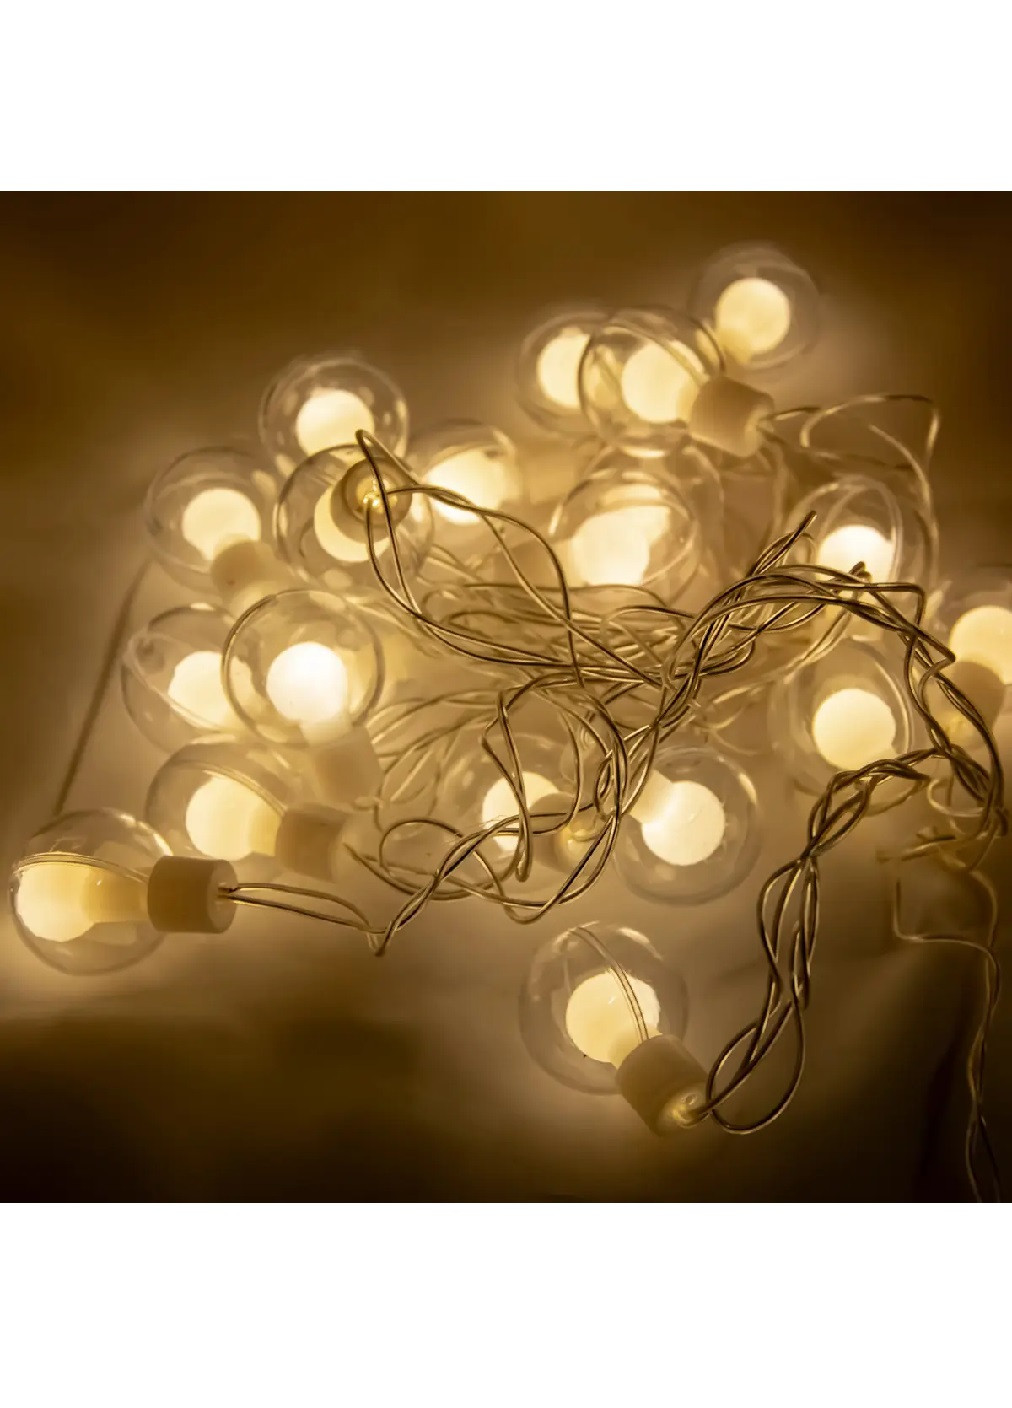 Світлодіодна святкова кімнатна гірлянда штора бахрома лампочки 20 LED світлодіодів 4.95 м (475454-Prob) Тепла біла Unbranded (267807906)